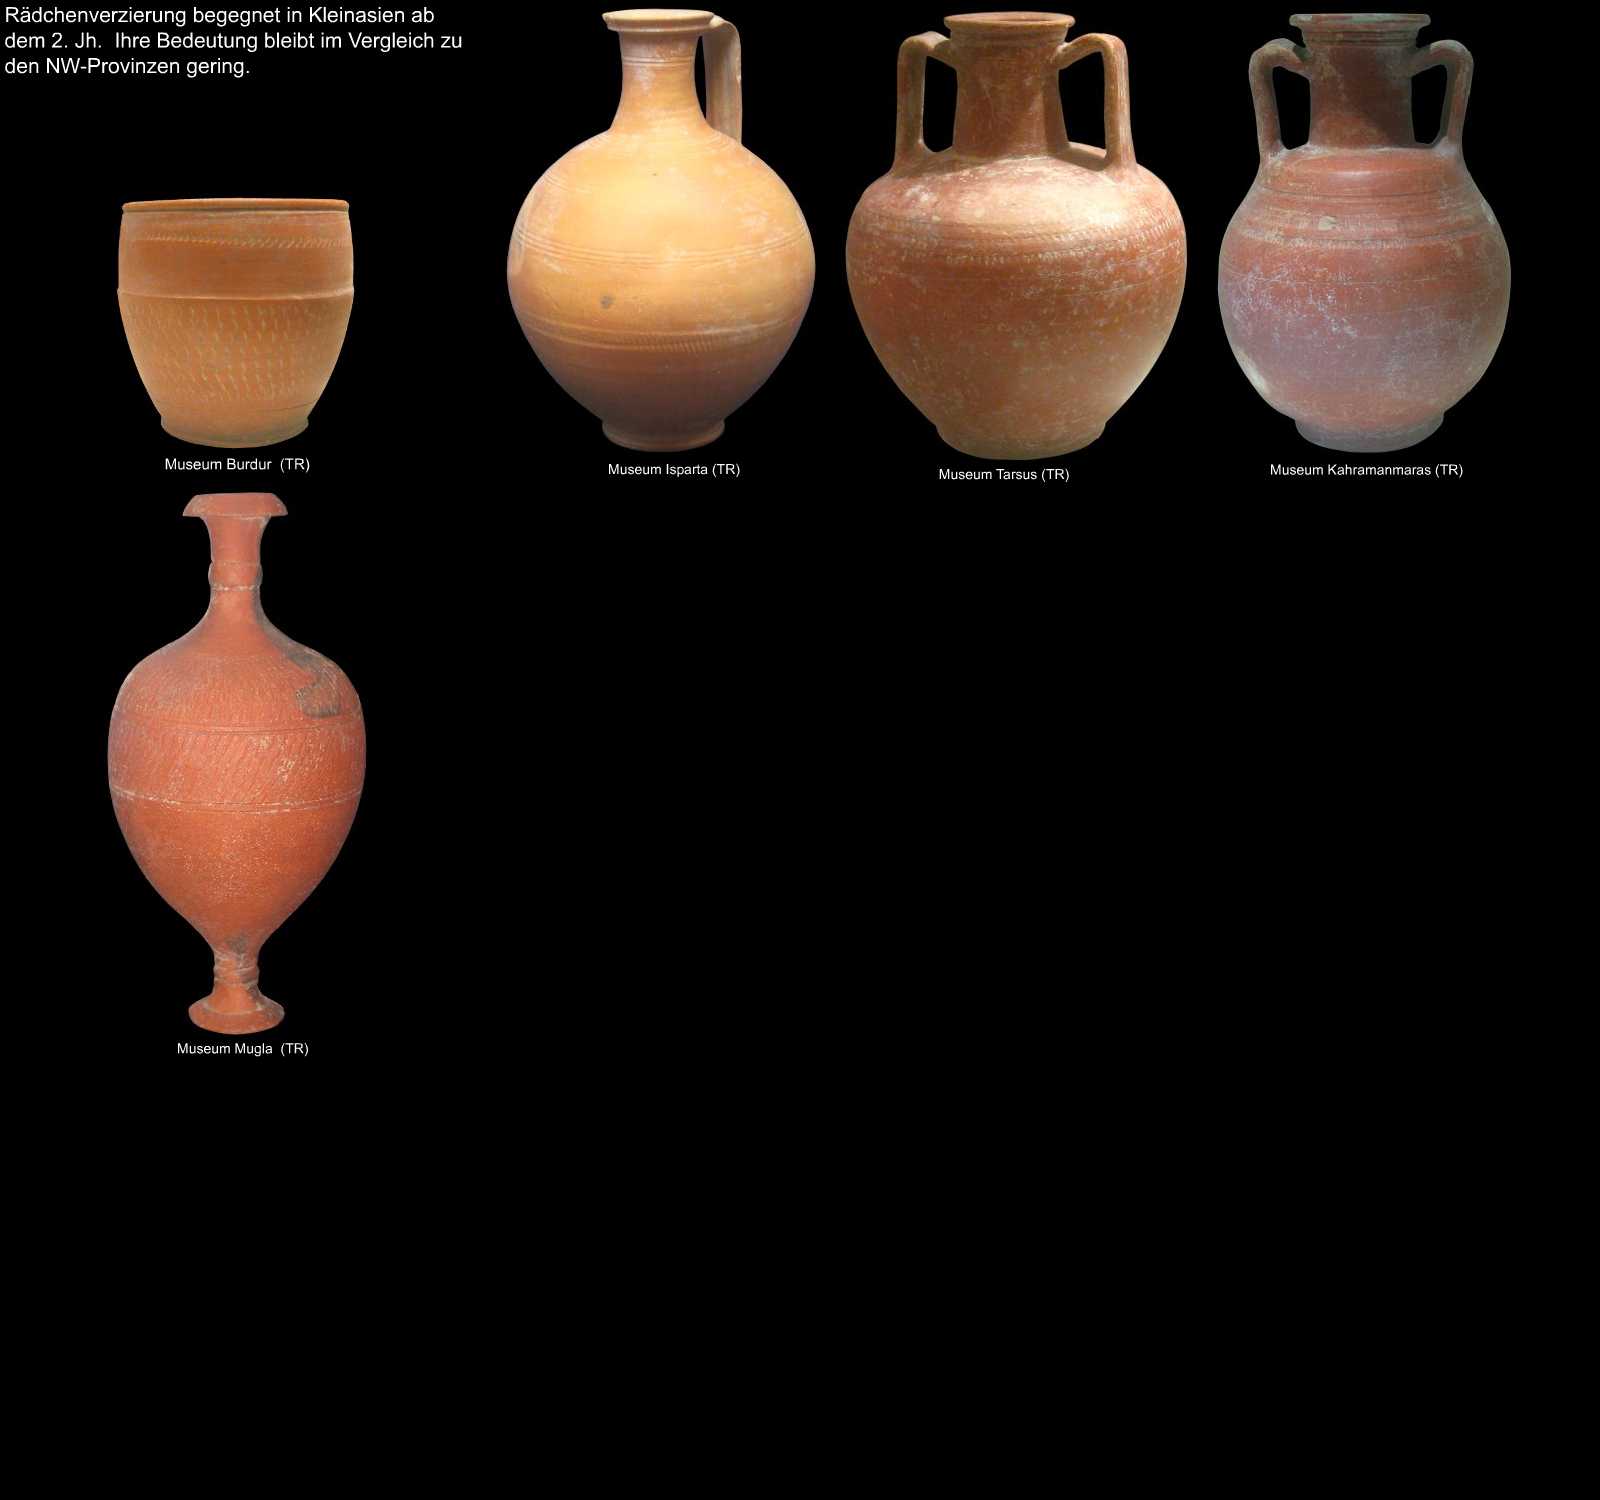 rädchengravierte Keramik aus Kleinasien